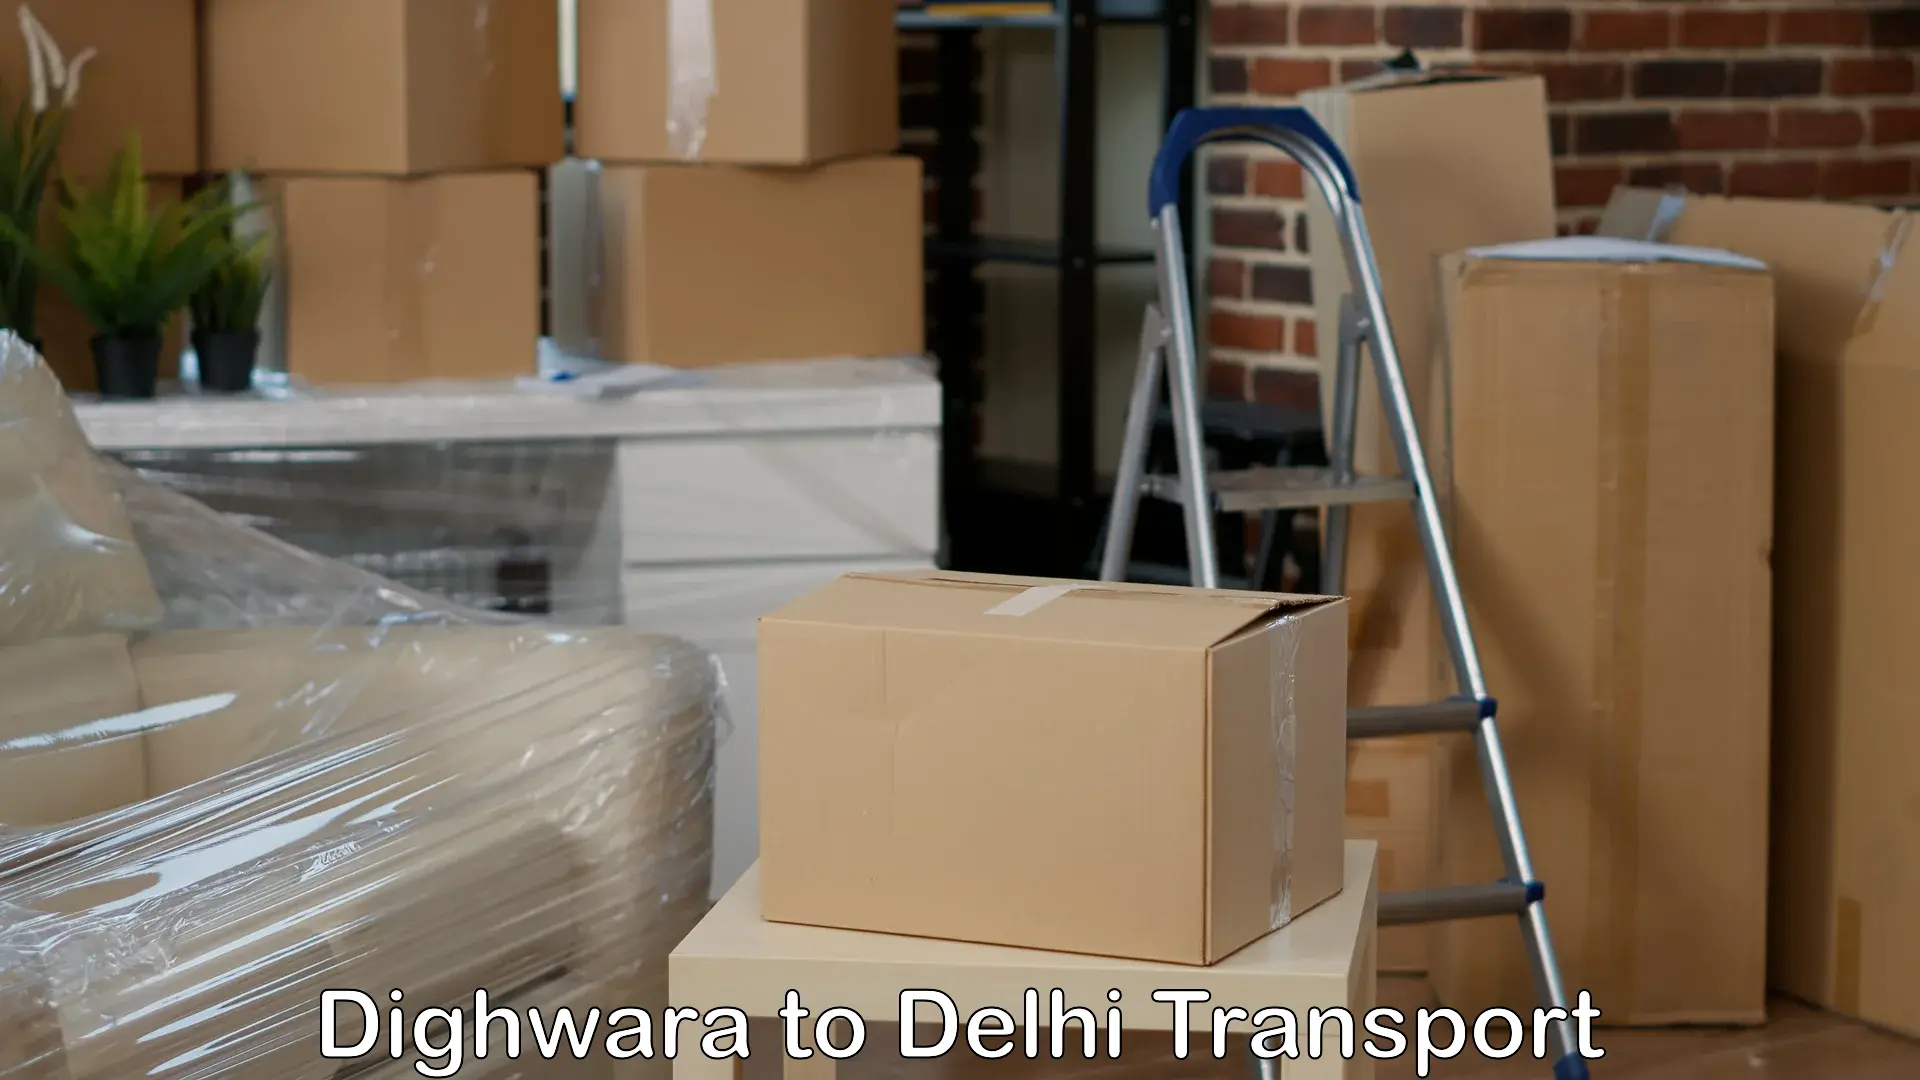 Commercial transport service Dighwara to NIT Delhi